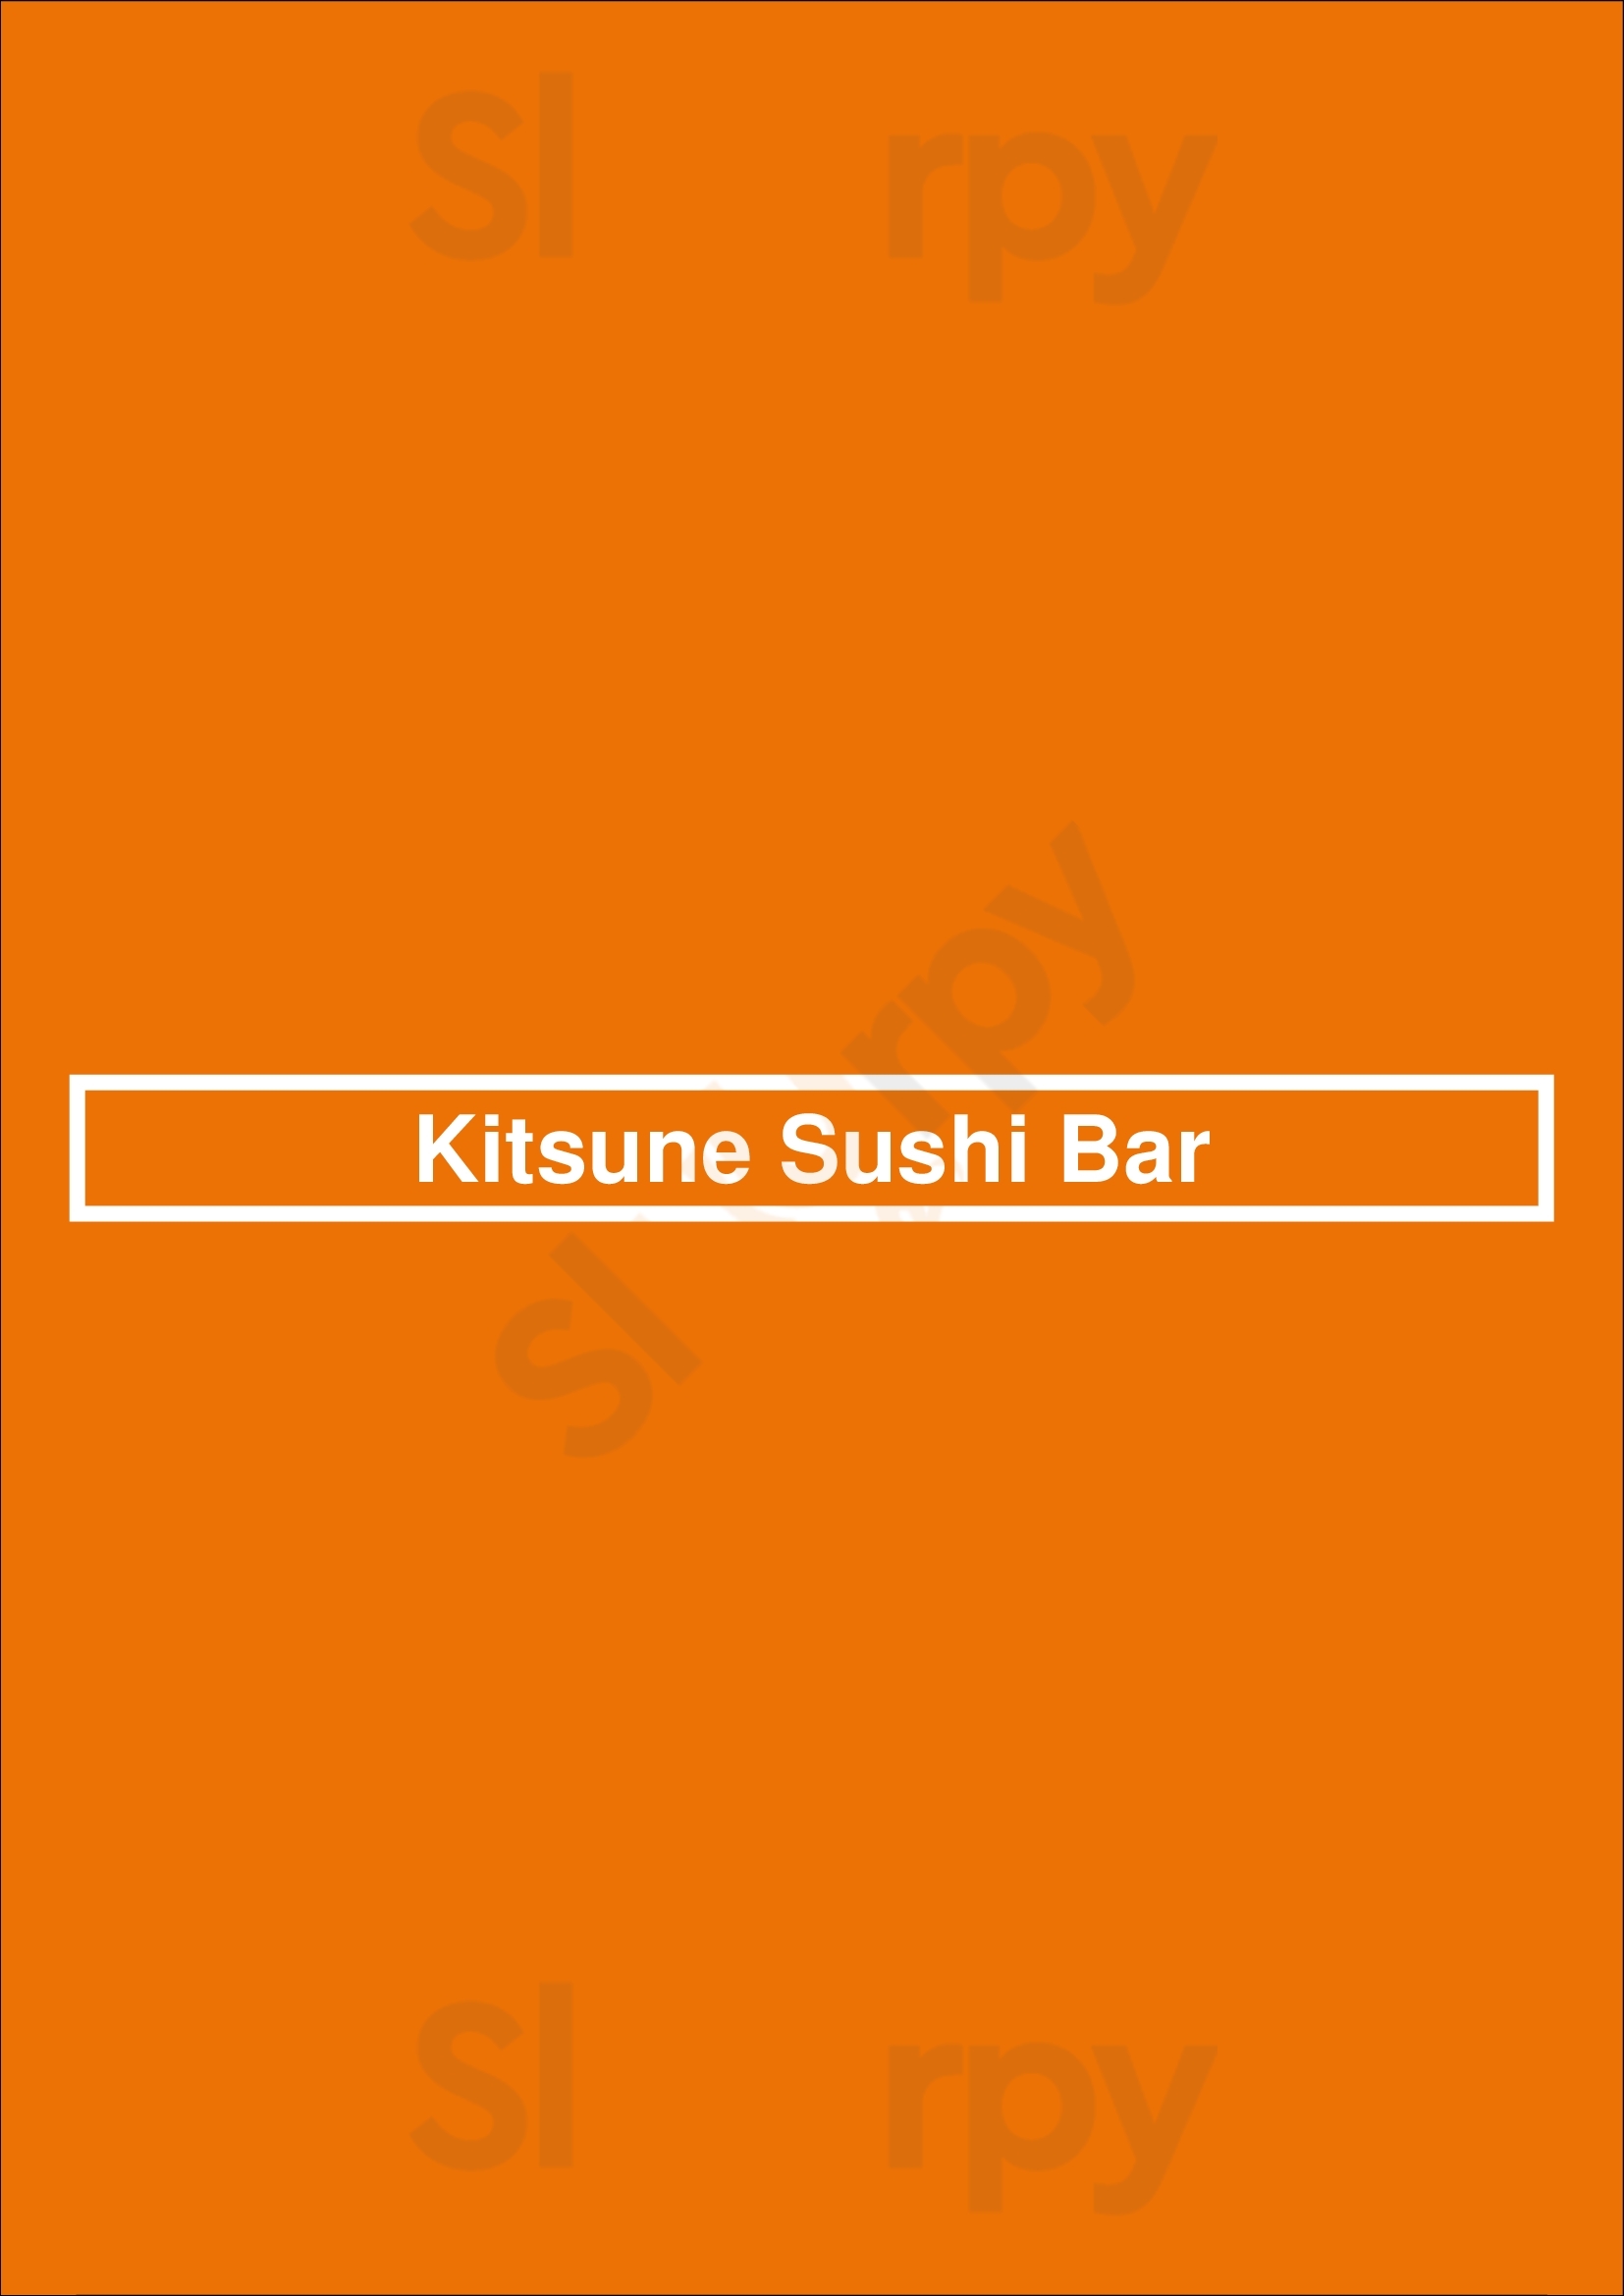 Kitsune Sushi Bar Sant Cugat del Vallès Menu - 1